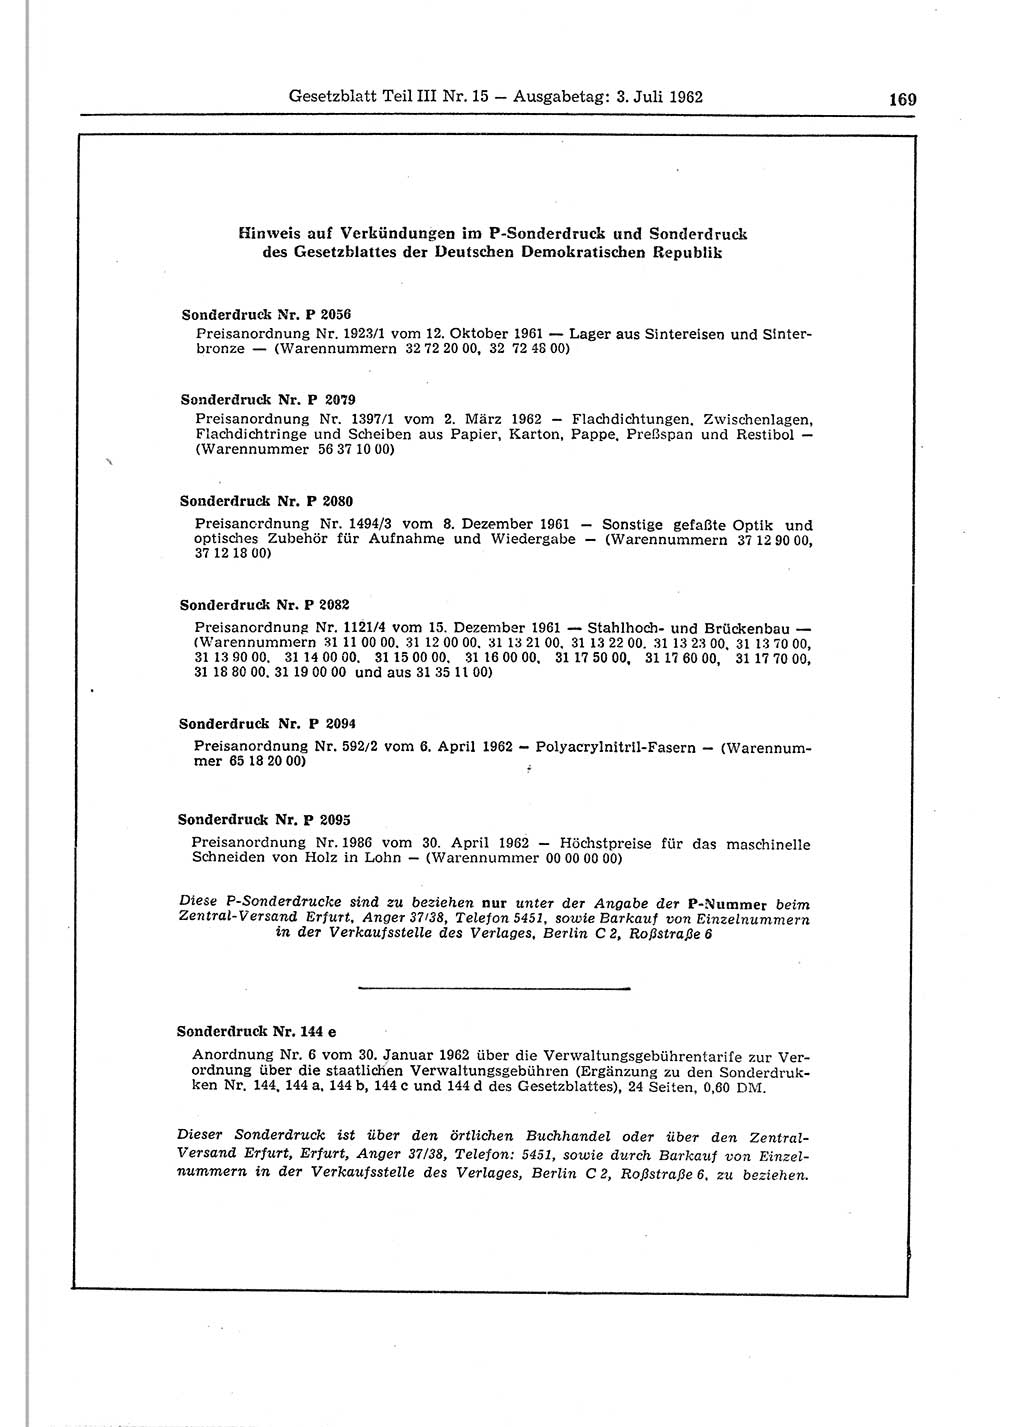 Gesetzblatt (GBl.) der Deutschen Demokratischen Republik (DDR) Teil ⅠⅠⅠ 1962, Seite 169 (GBl. DDR ⅠⅠⅠ 1962, S. 169)